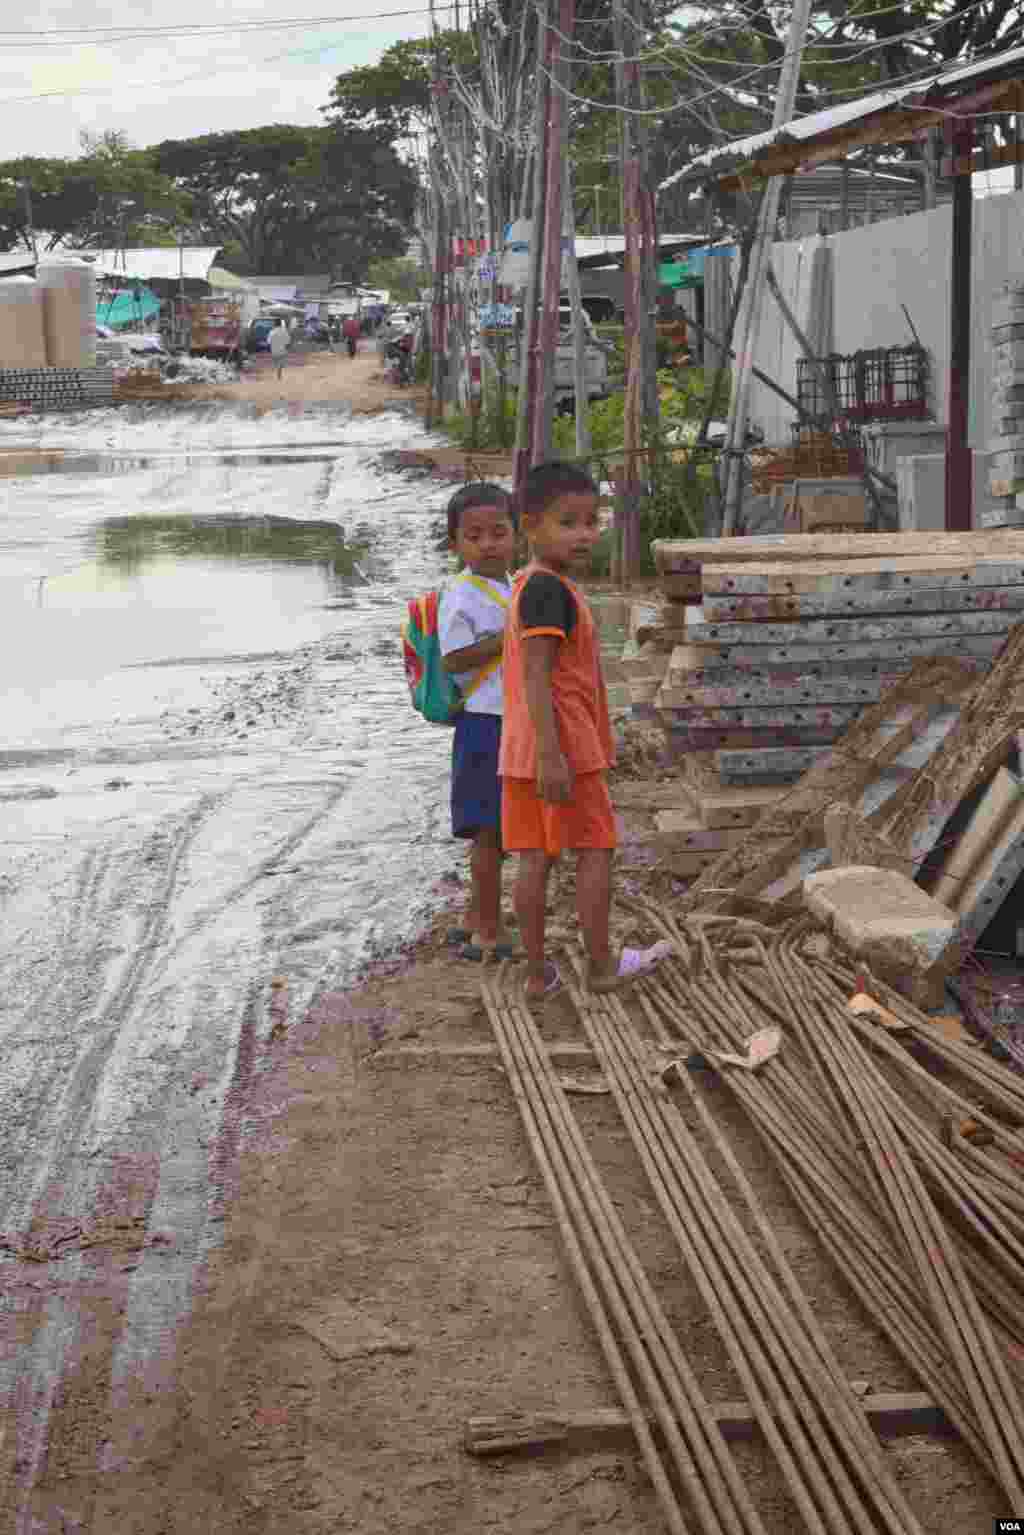 Two children at a Bangkok construction site, Bangkok, July 10, 2014. (Rosyla Kalden/VOA)